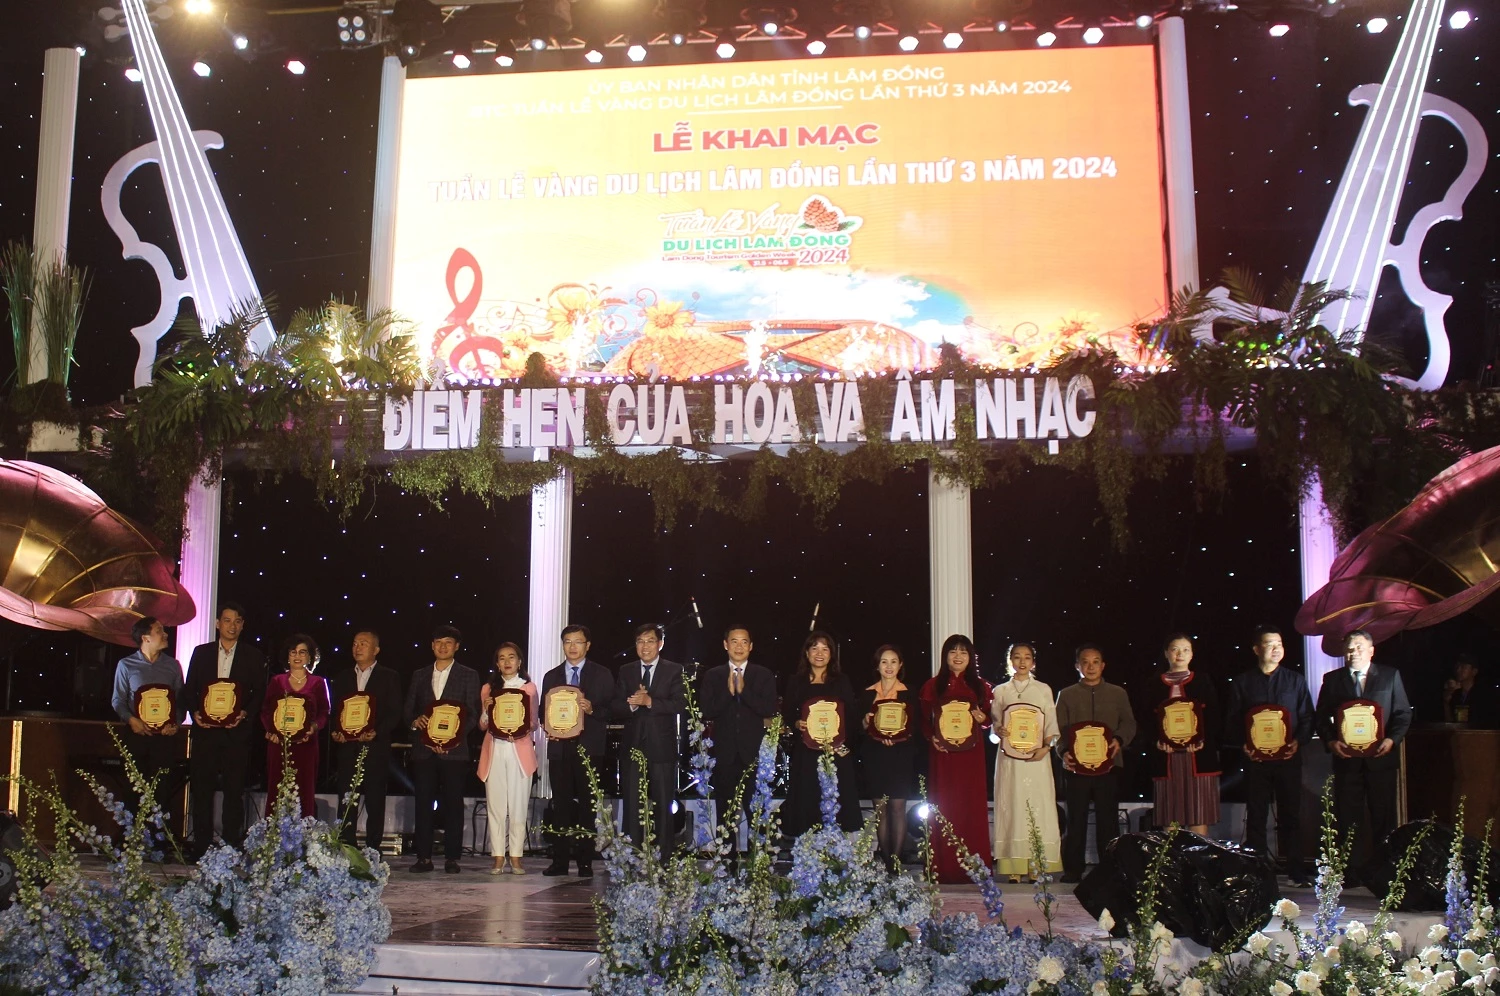 Quyền Bí thư Tỉnh uỷ Lâm Đồng Nguyễn Thái Học và Phó Chủ tịch UBND tỉnh lâm Đồng Võ Ngọc Hiệp tặng biểu trưng tri ân các doanh nghiệp đồng hành.